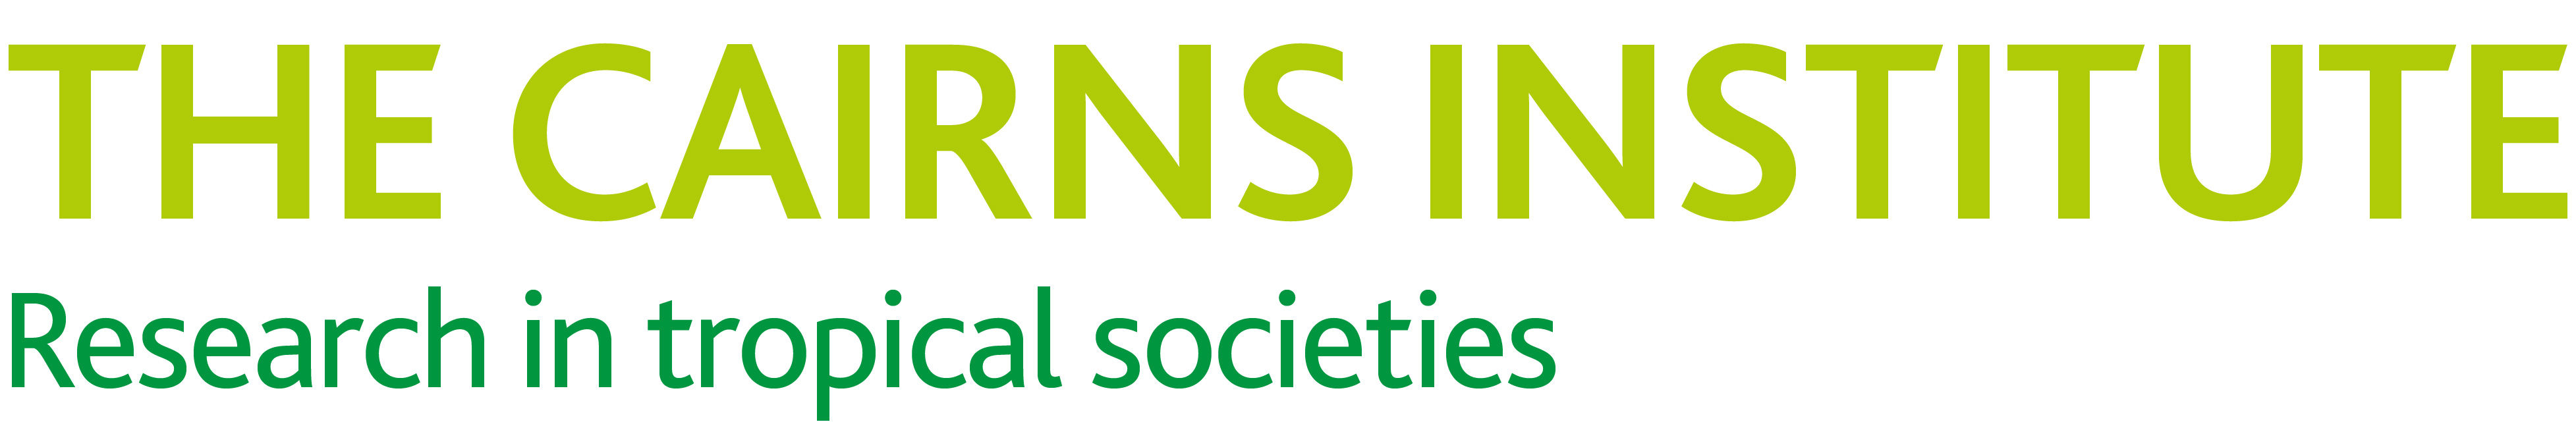 Cairns Institute logo